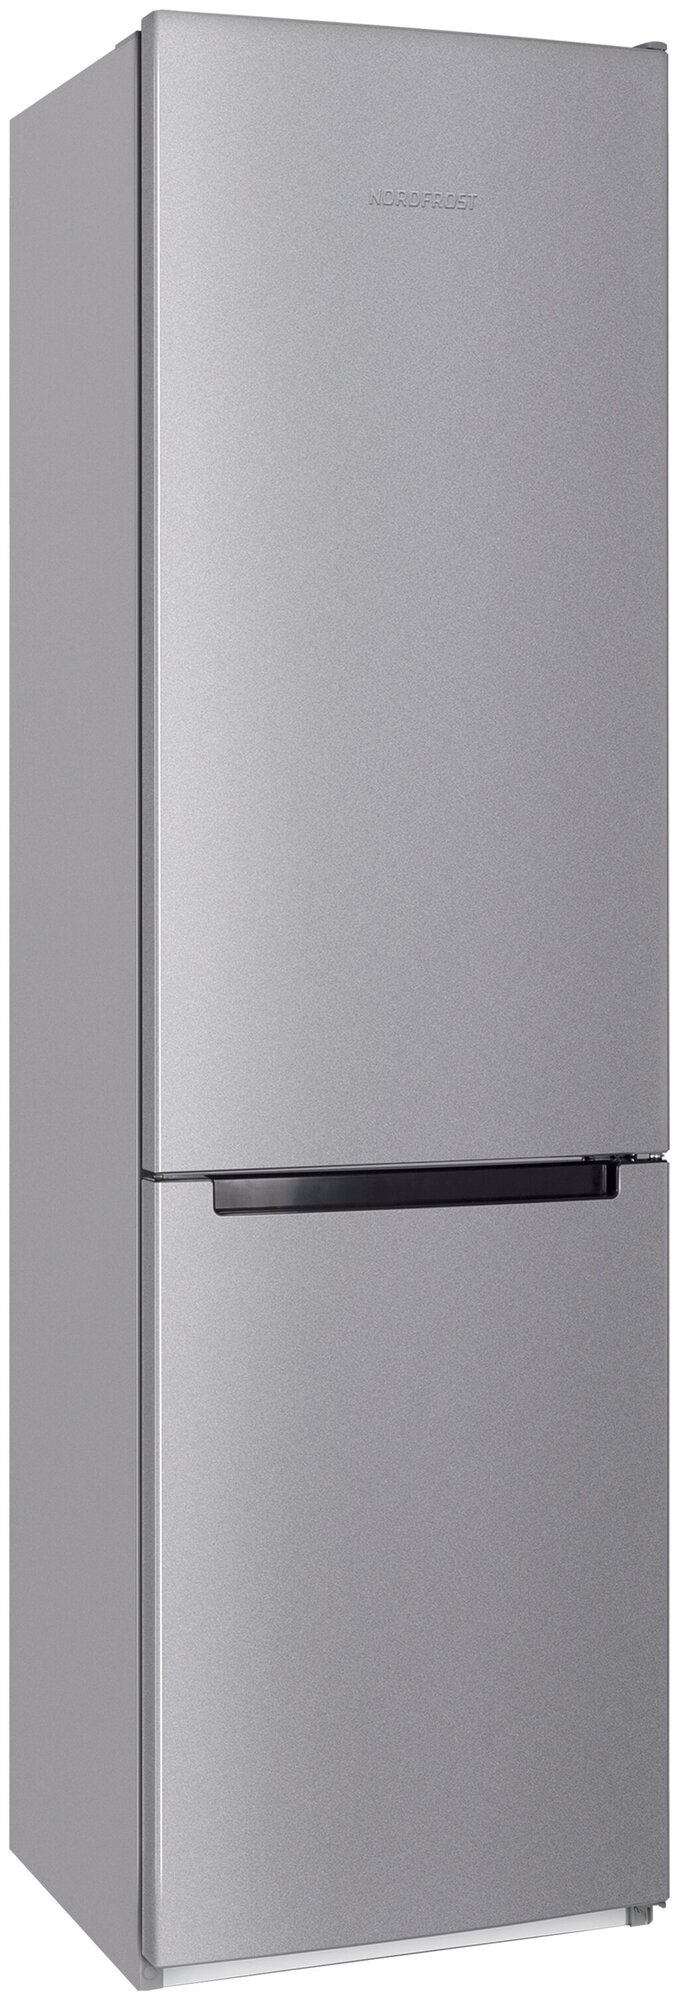 Холодильник NORDFROST NRB 164NF I двухкамерный, серебристый металлик,No Frost в МК, высота 203 см,343 л - фотография № 1